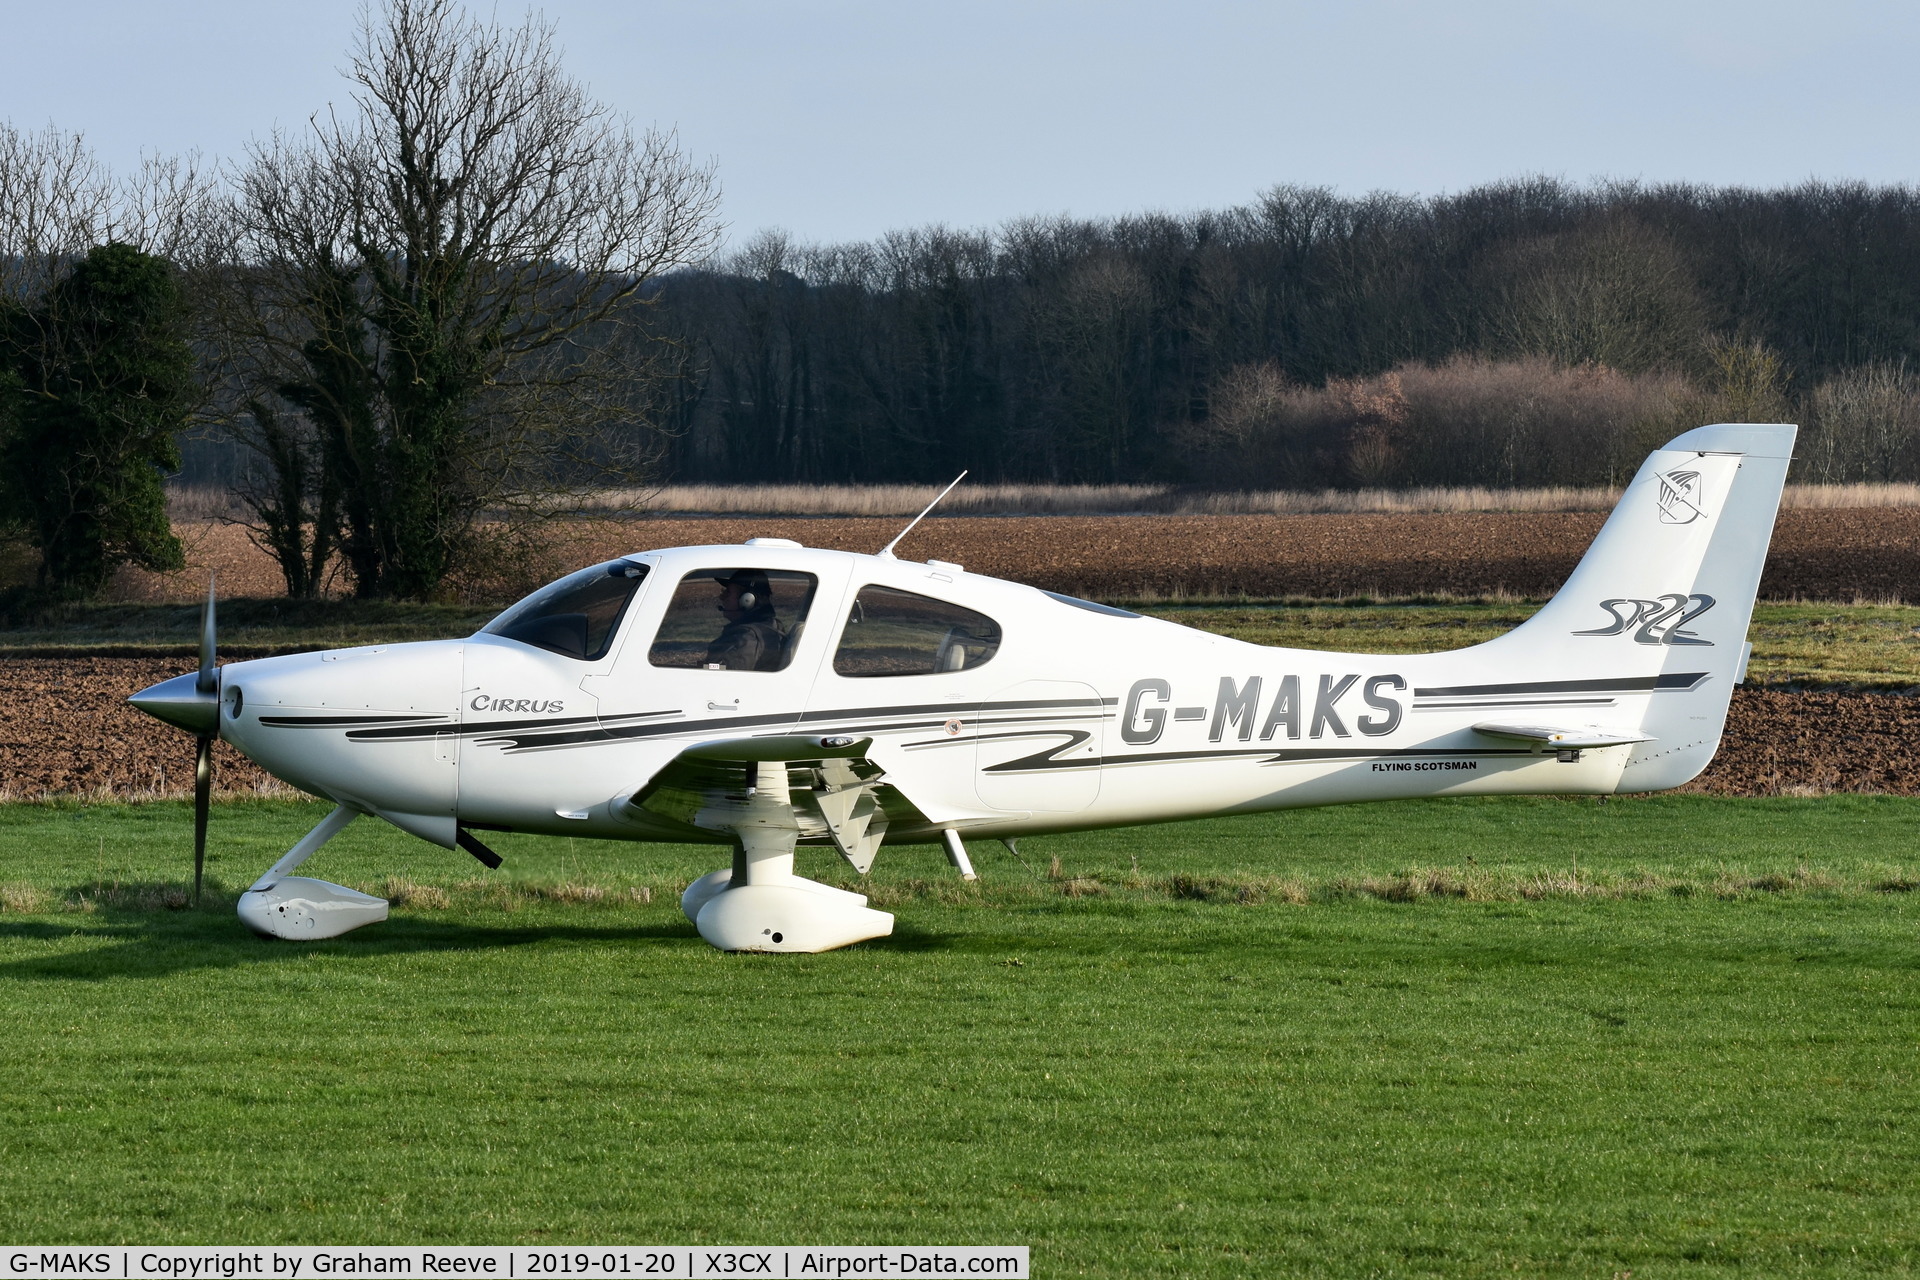 G-MAKS, 2002 Cirrus SR22 C/N 0367, Just landed at Northrepps.